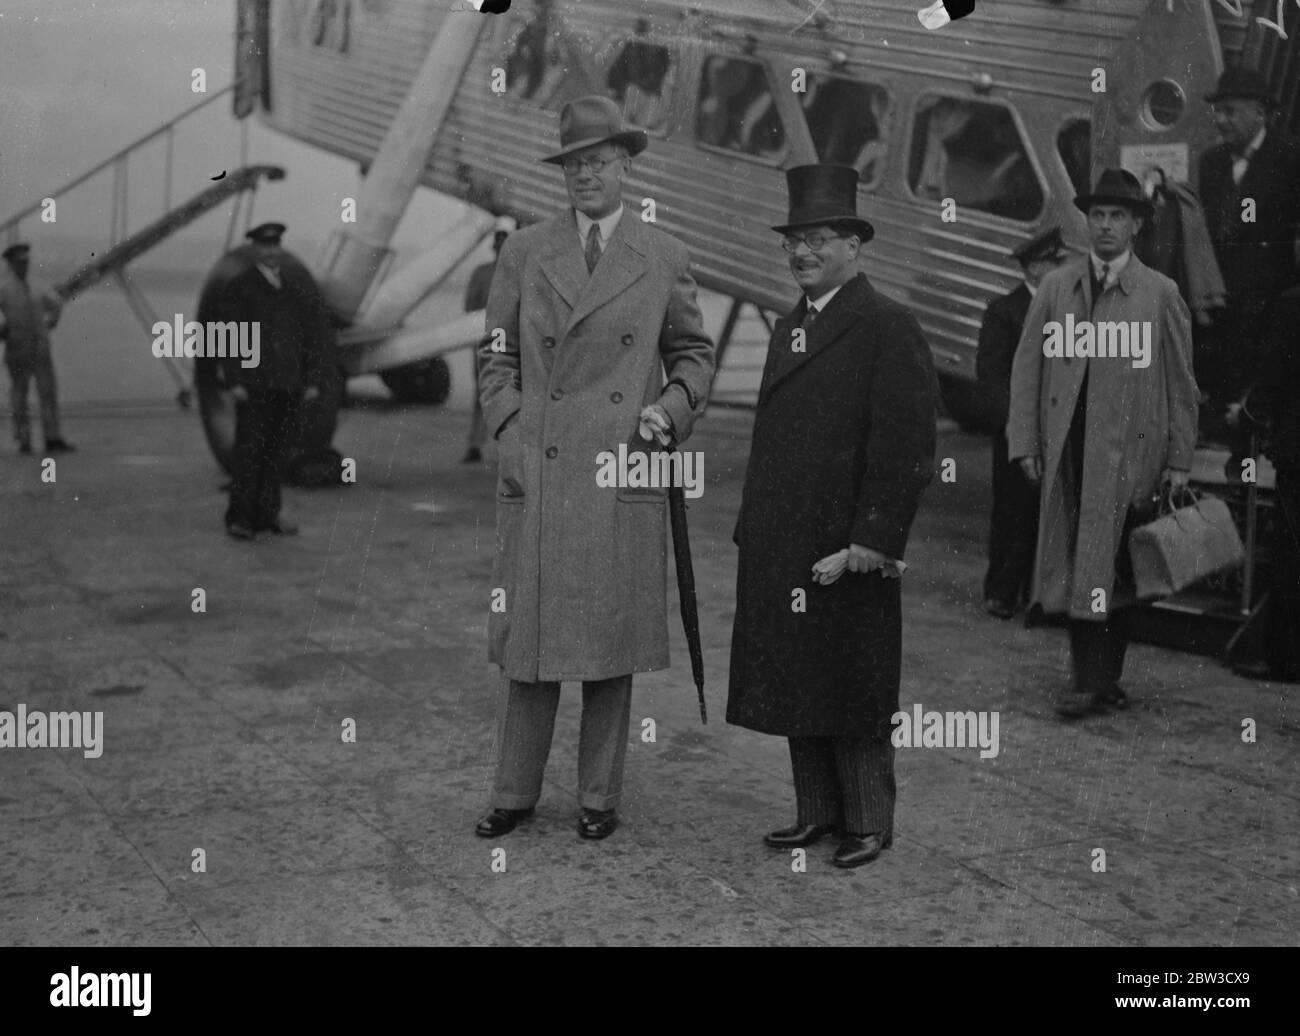 Le Prince héritier de Suède arrive par avion . Le prince héritier Gustaf Adolf avec le ministre suédois , le baron Palmetierns , à l'arrivée à Croydon . 29 octobre 1935 Banque D'Images